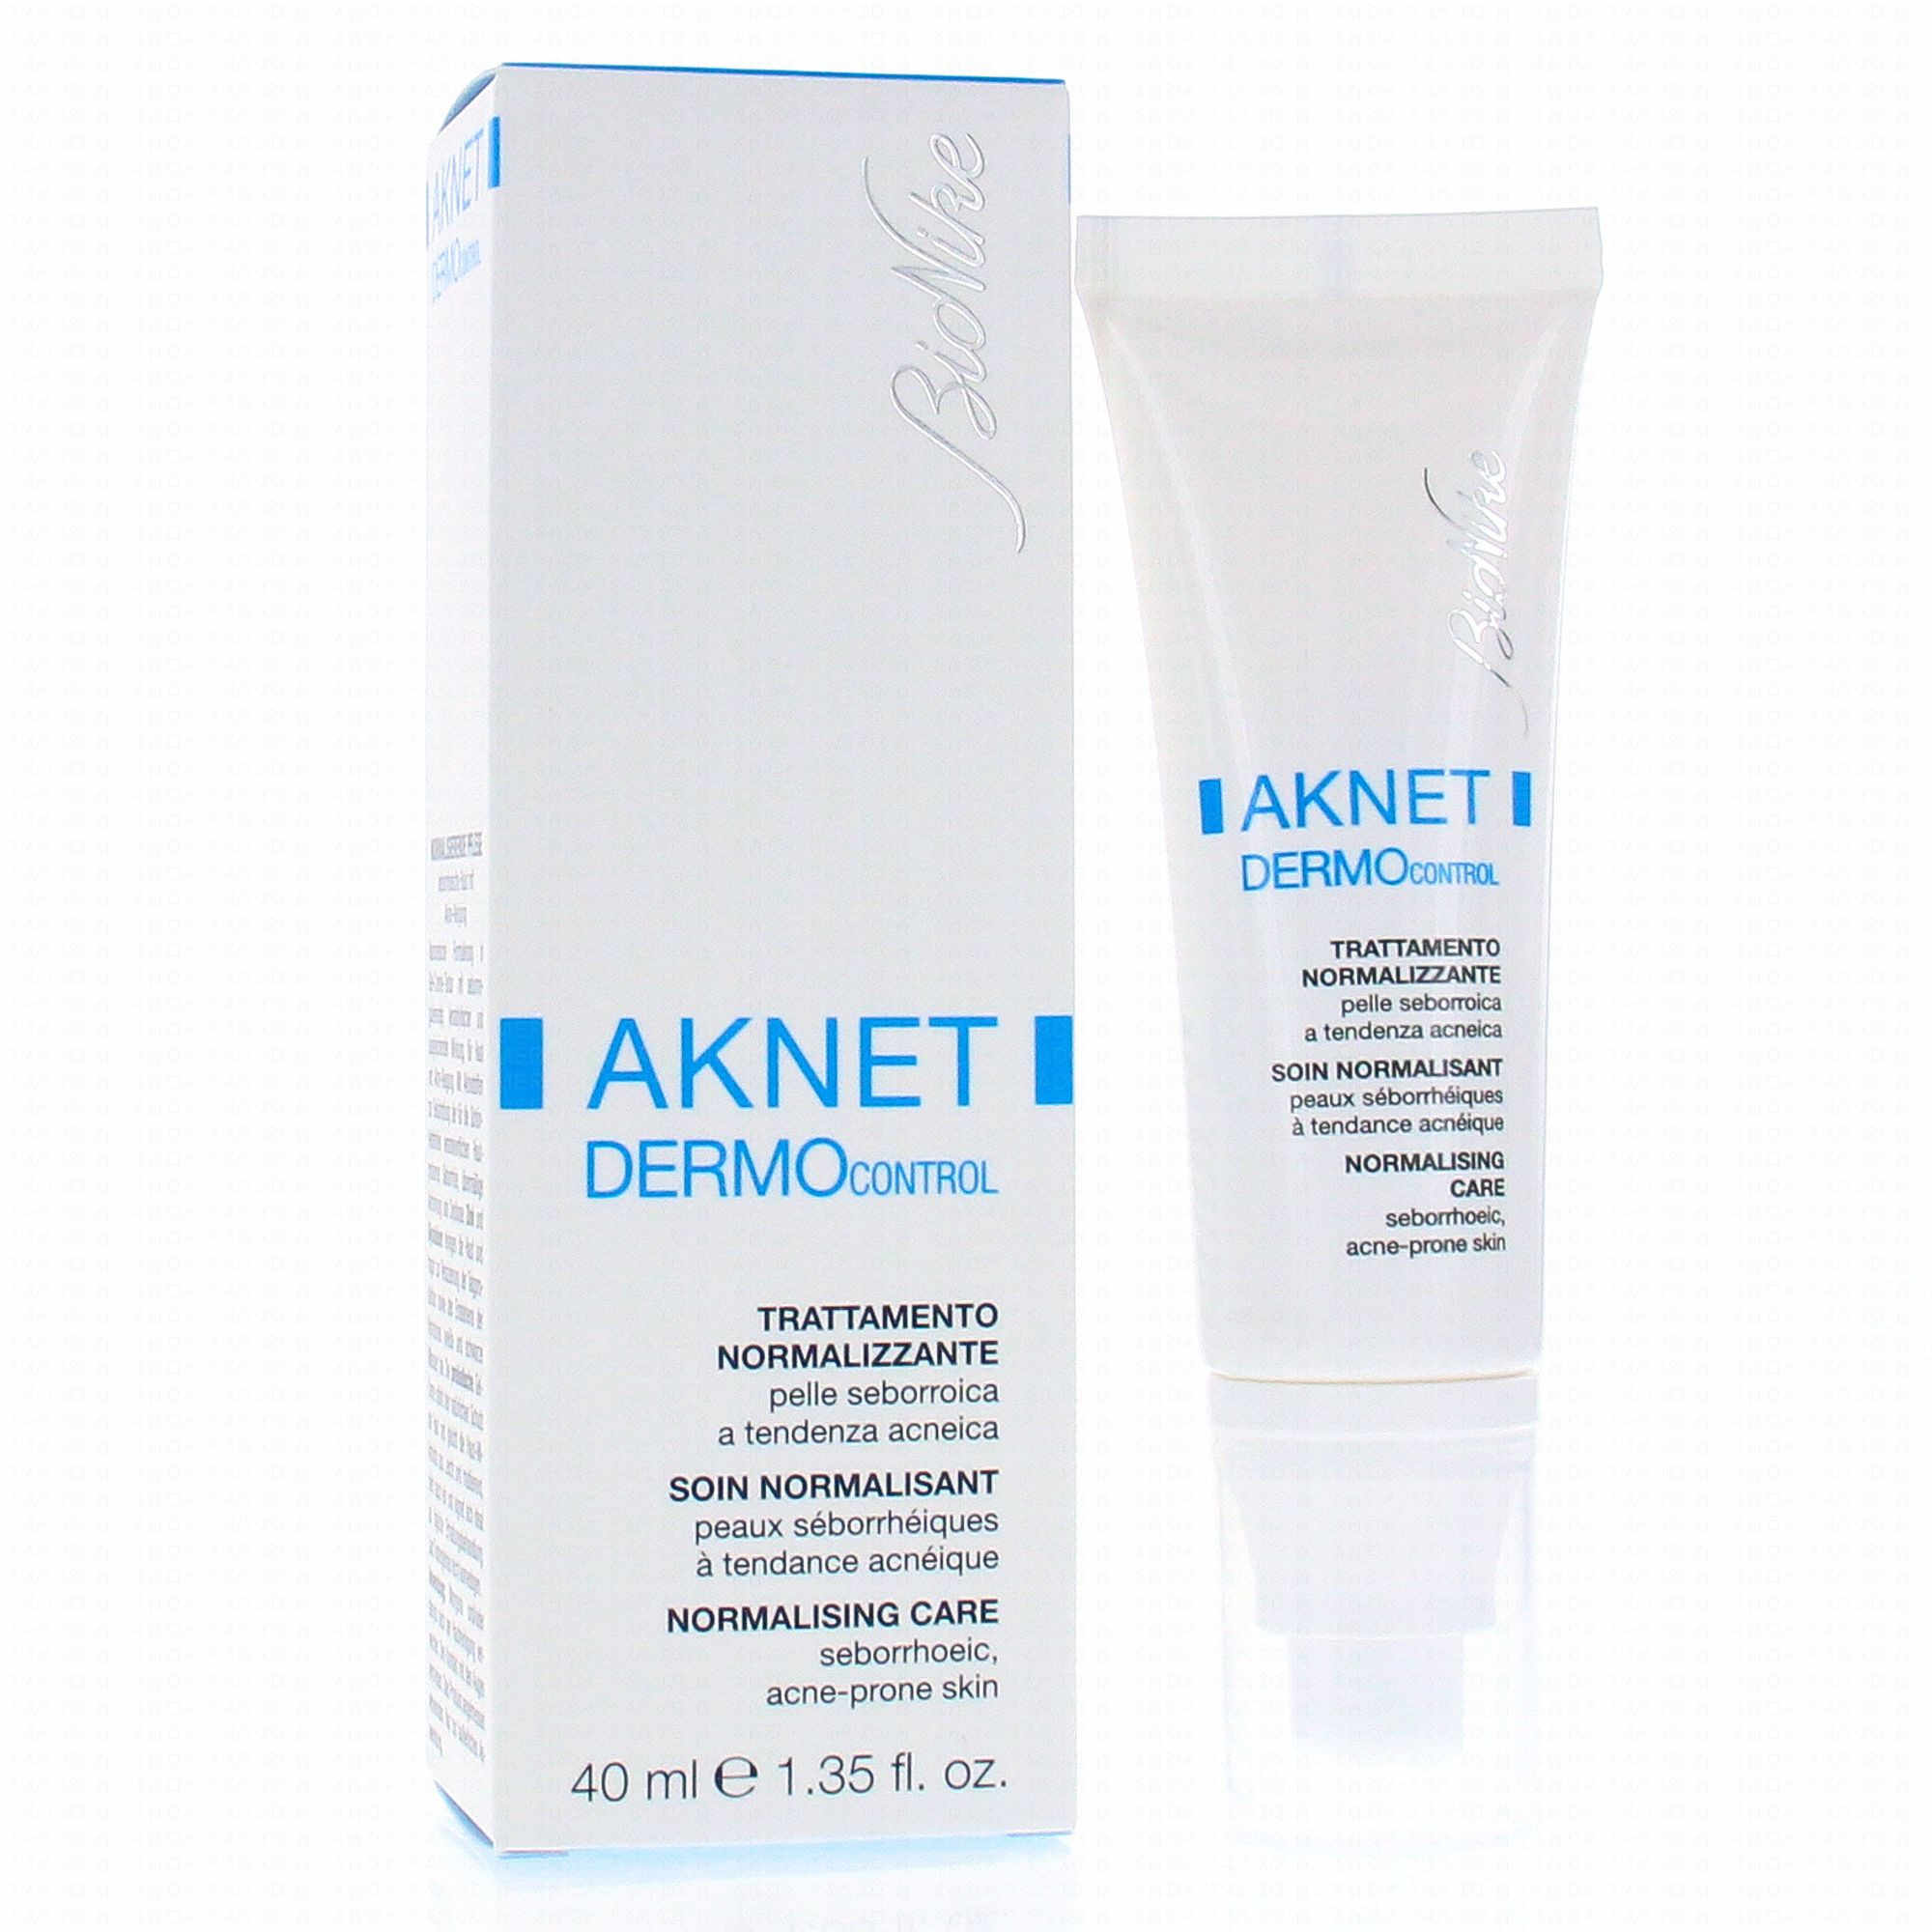 Bionike Aknet Hydra Plus Tratament reparator pentru pielea seboreica si predispusa la acnee 40 ml